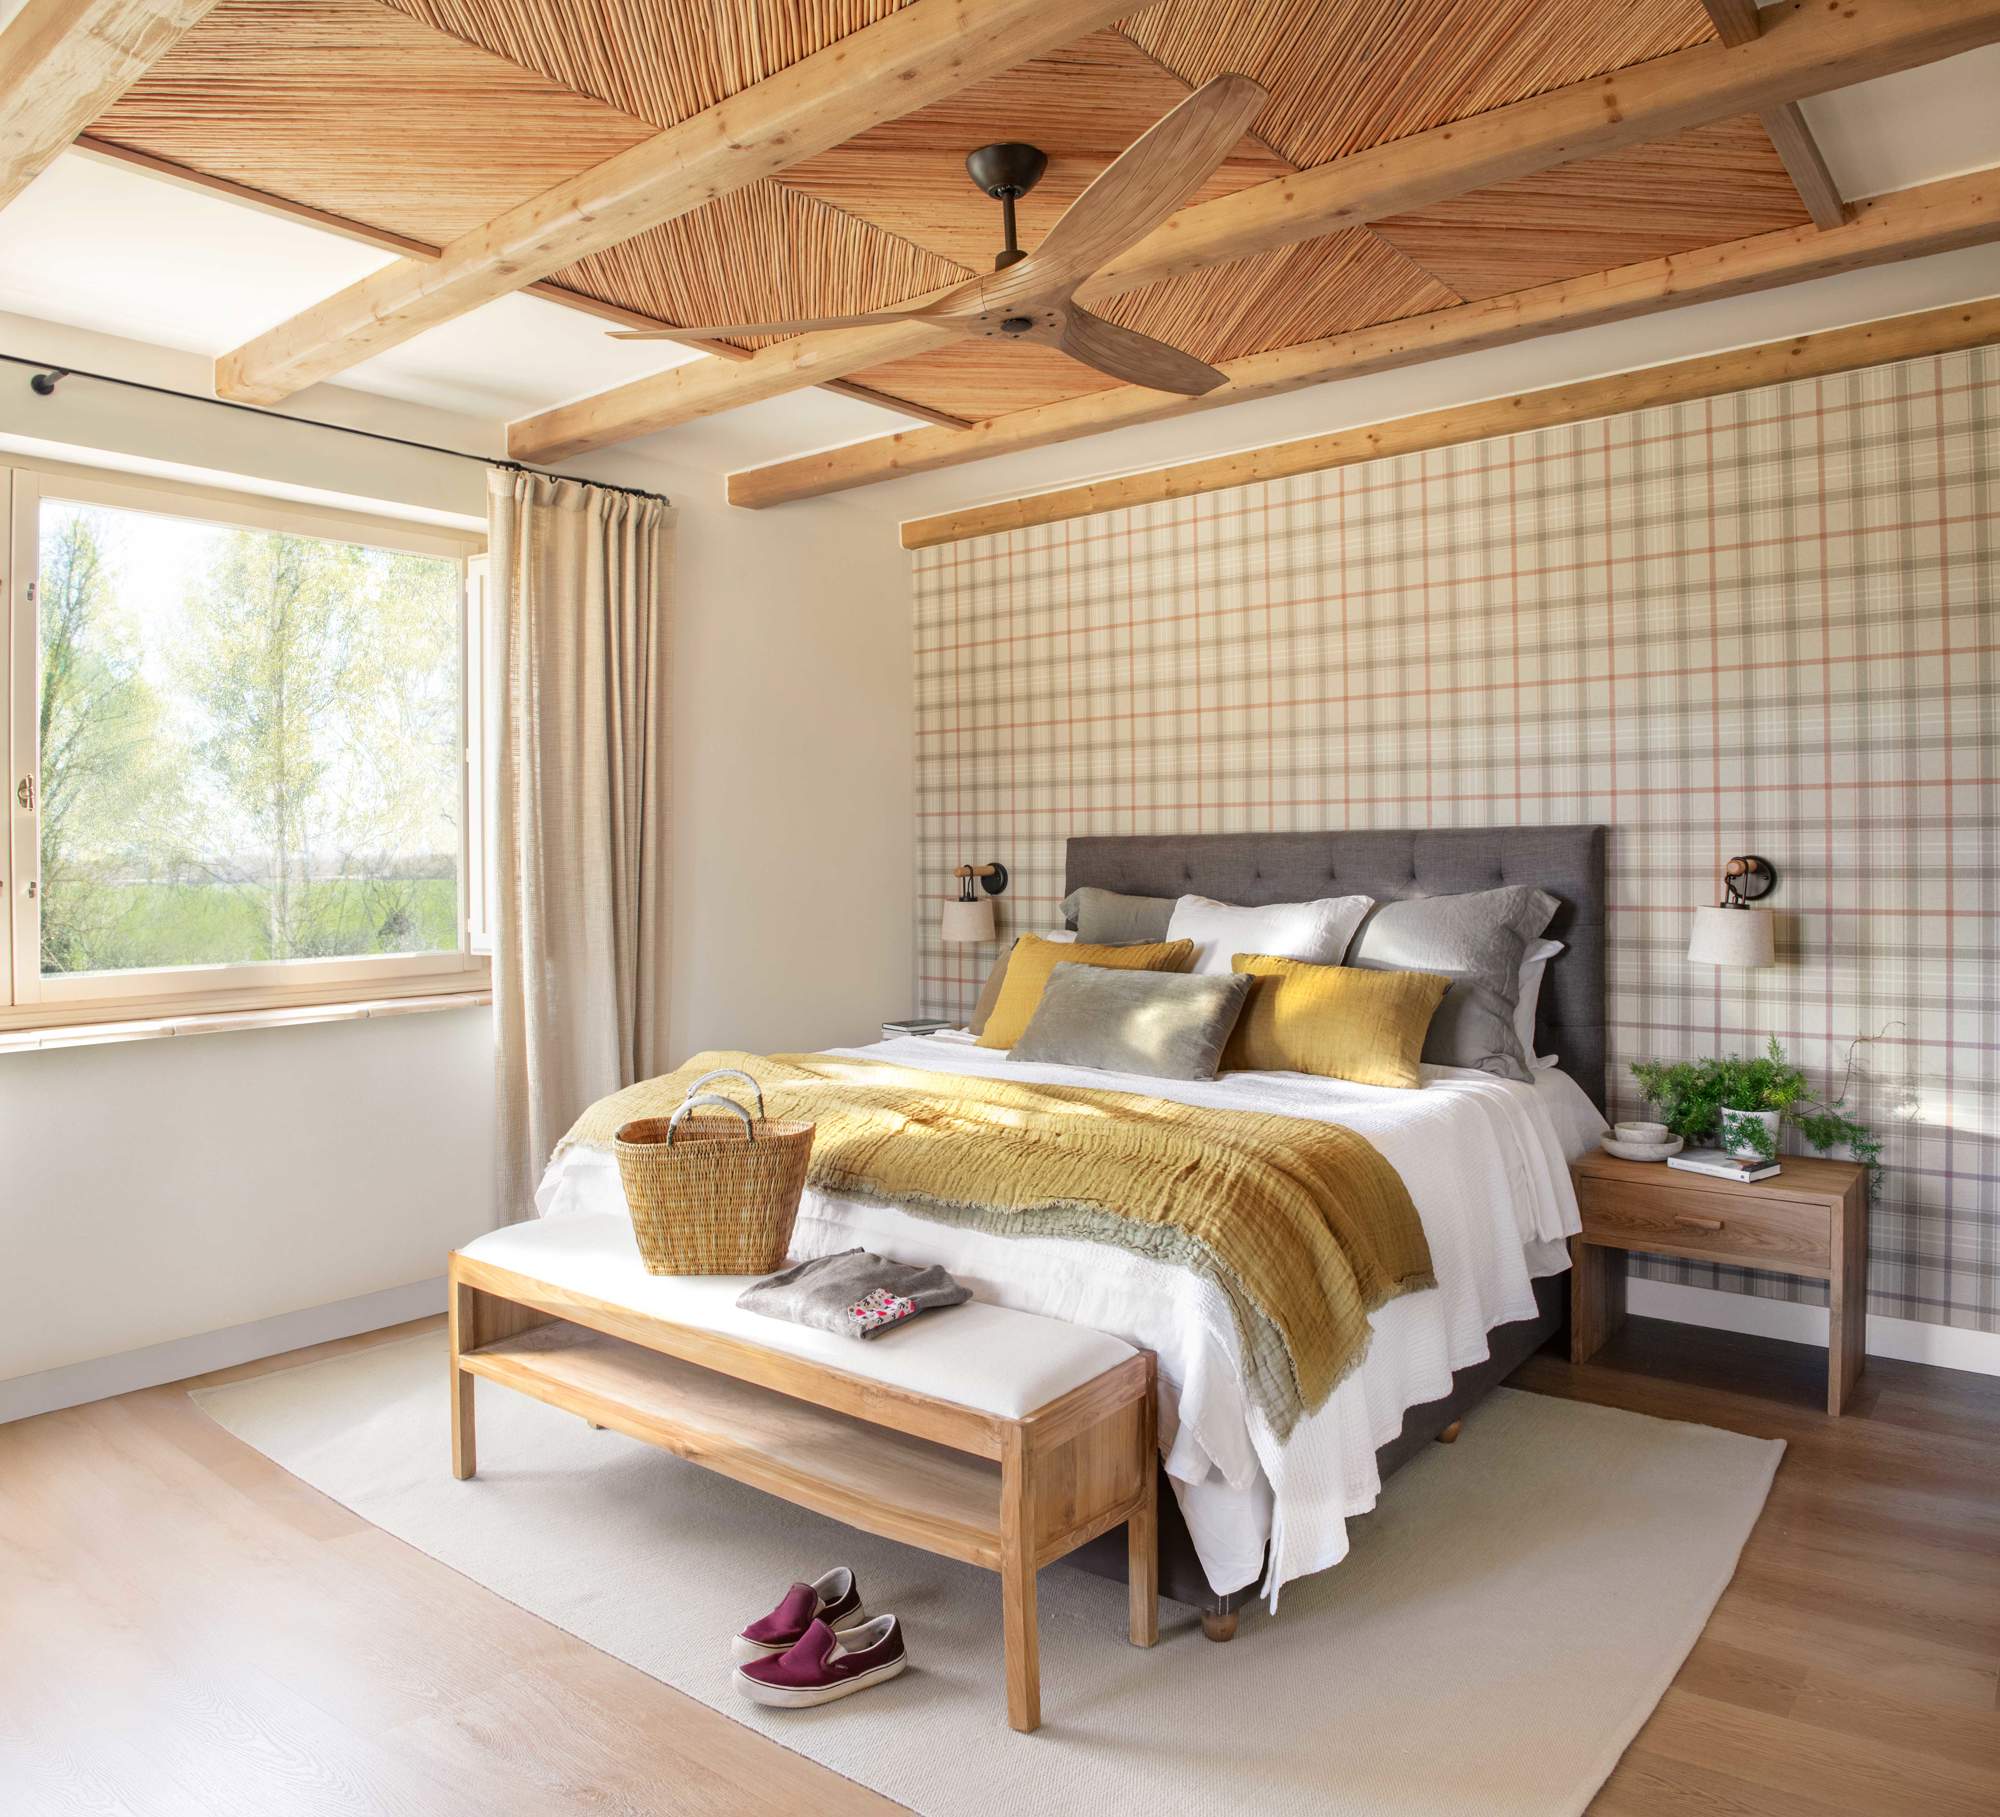 Dormitorio con papel pintado de cuadros, techo con vigas y cañizo y cabecero tapizado